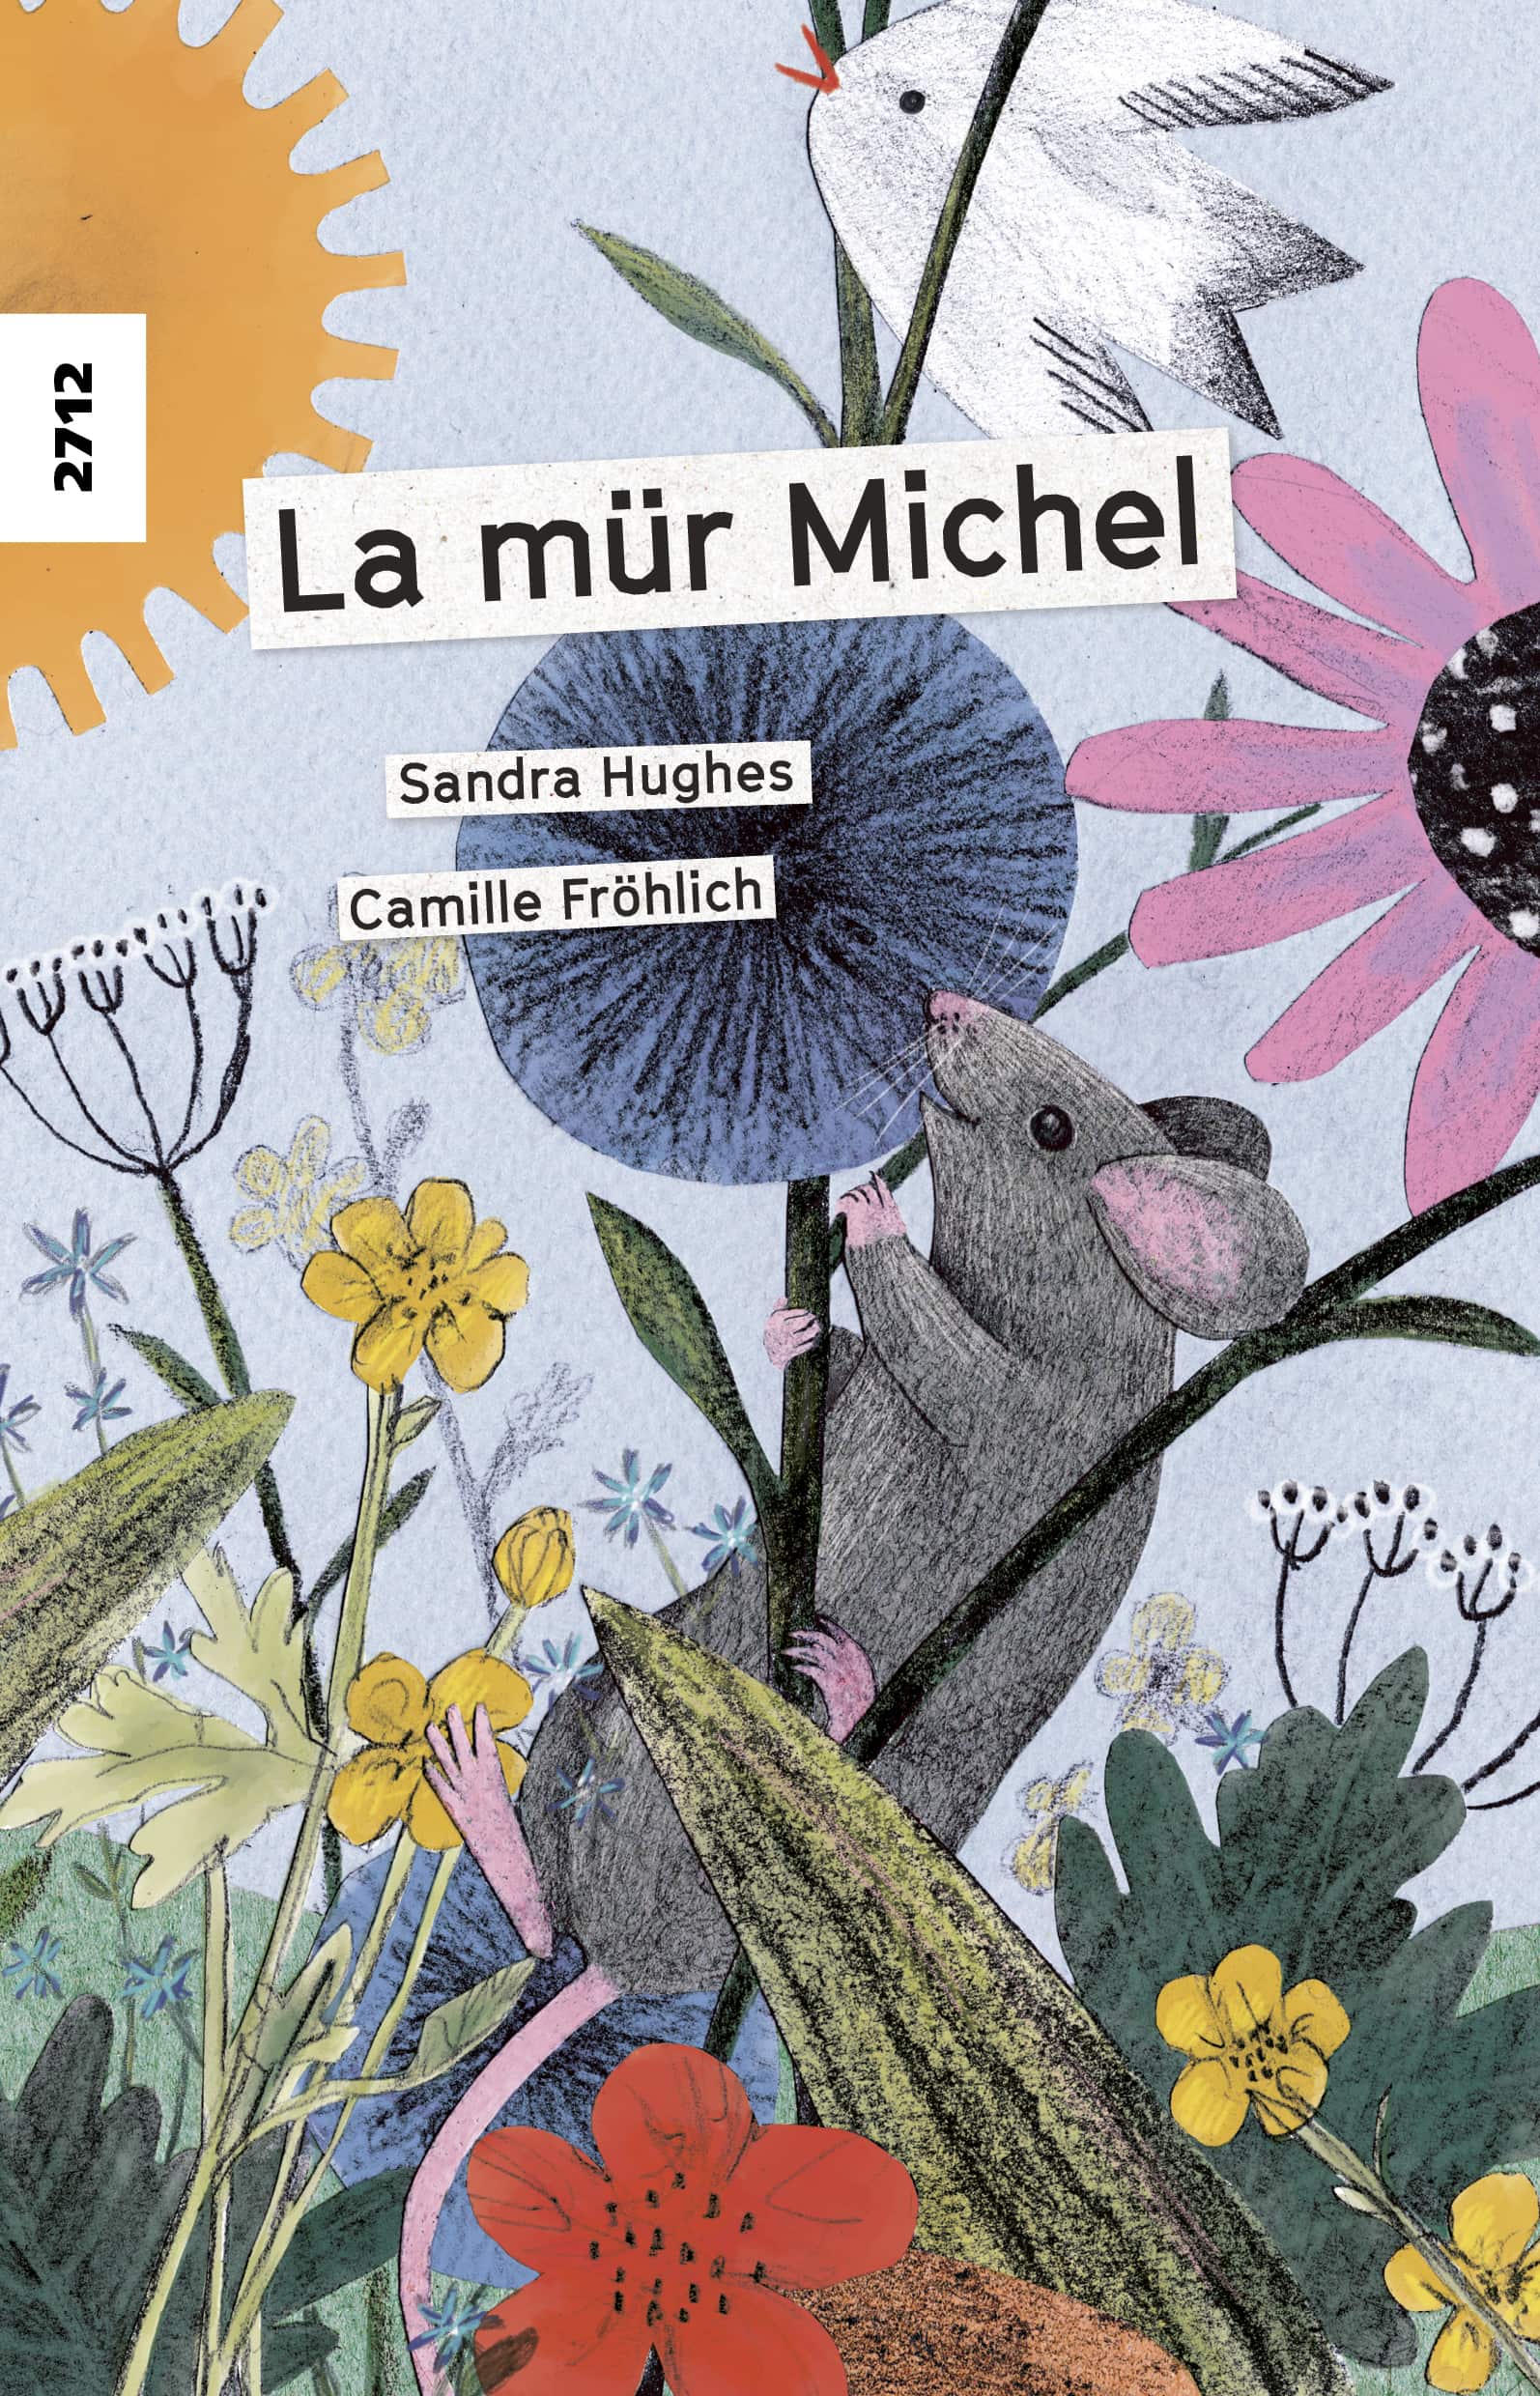 La muer Michel, ein Kinderbuch von Sandra Hughes, Illustration von Camille Froehlich, SJW Verlag, Tiere, Erstlesetext